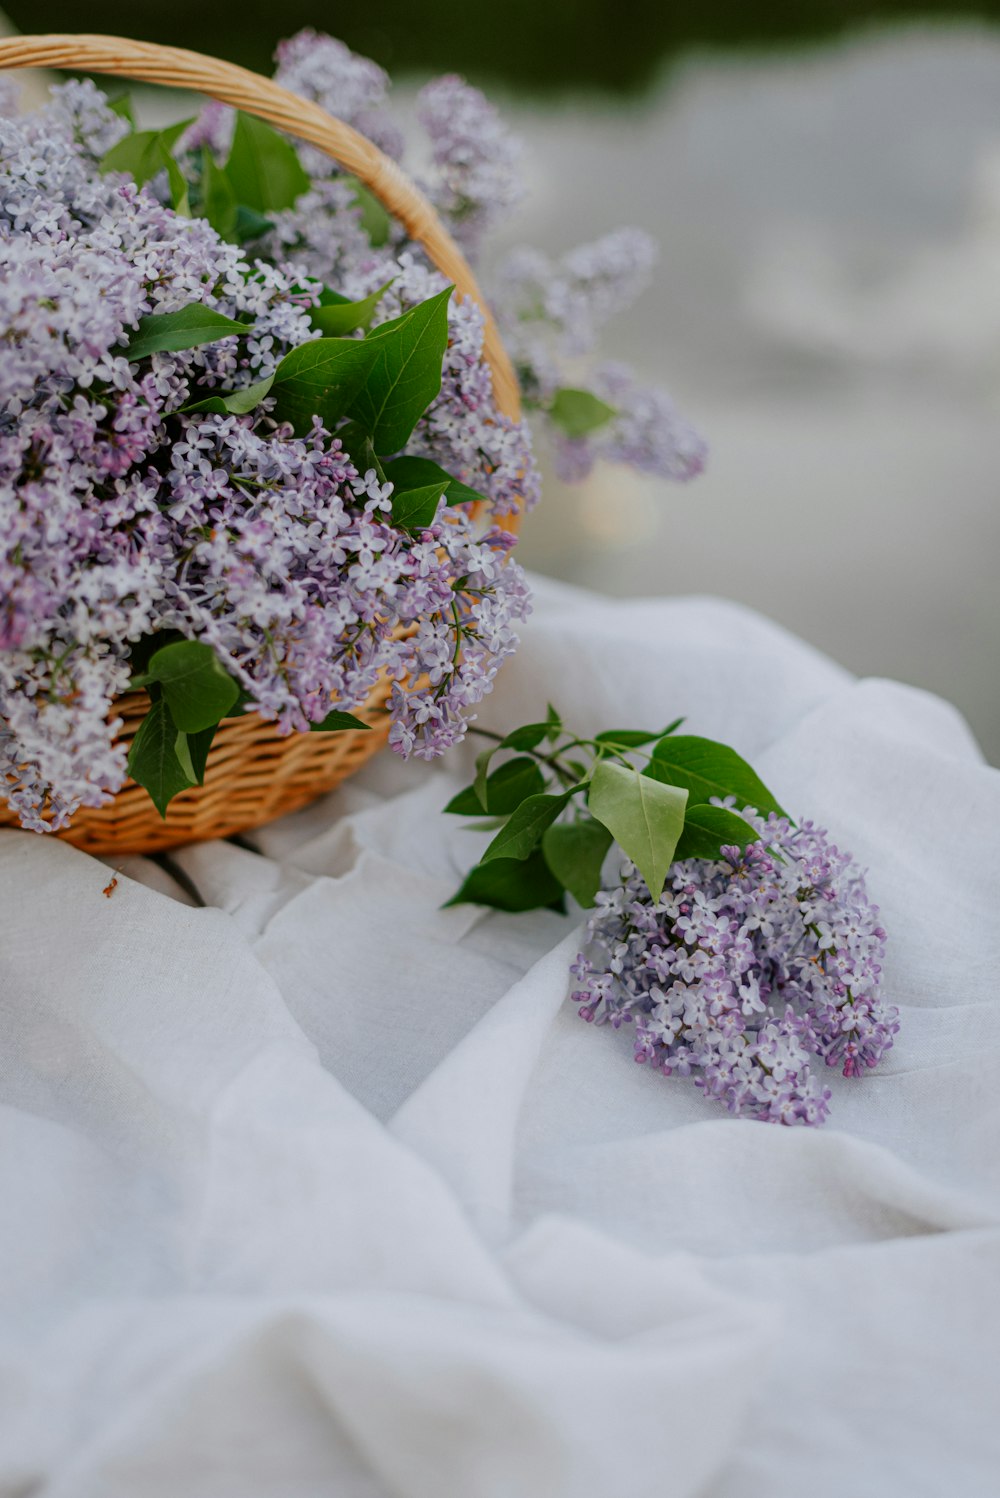 una cesta de mimbre llena de lilas sobre un paño blanco